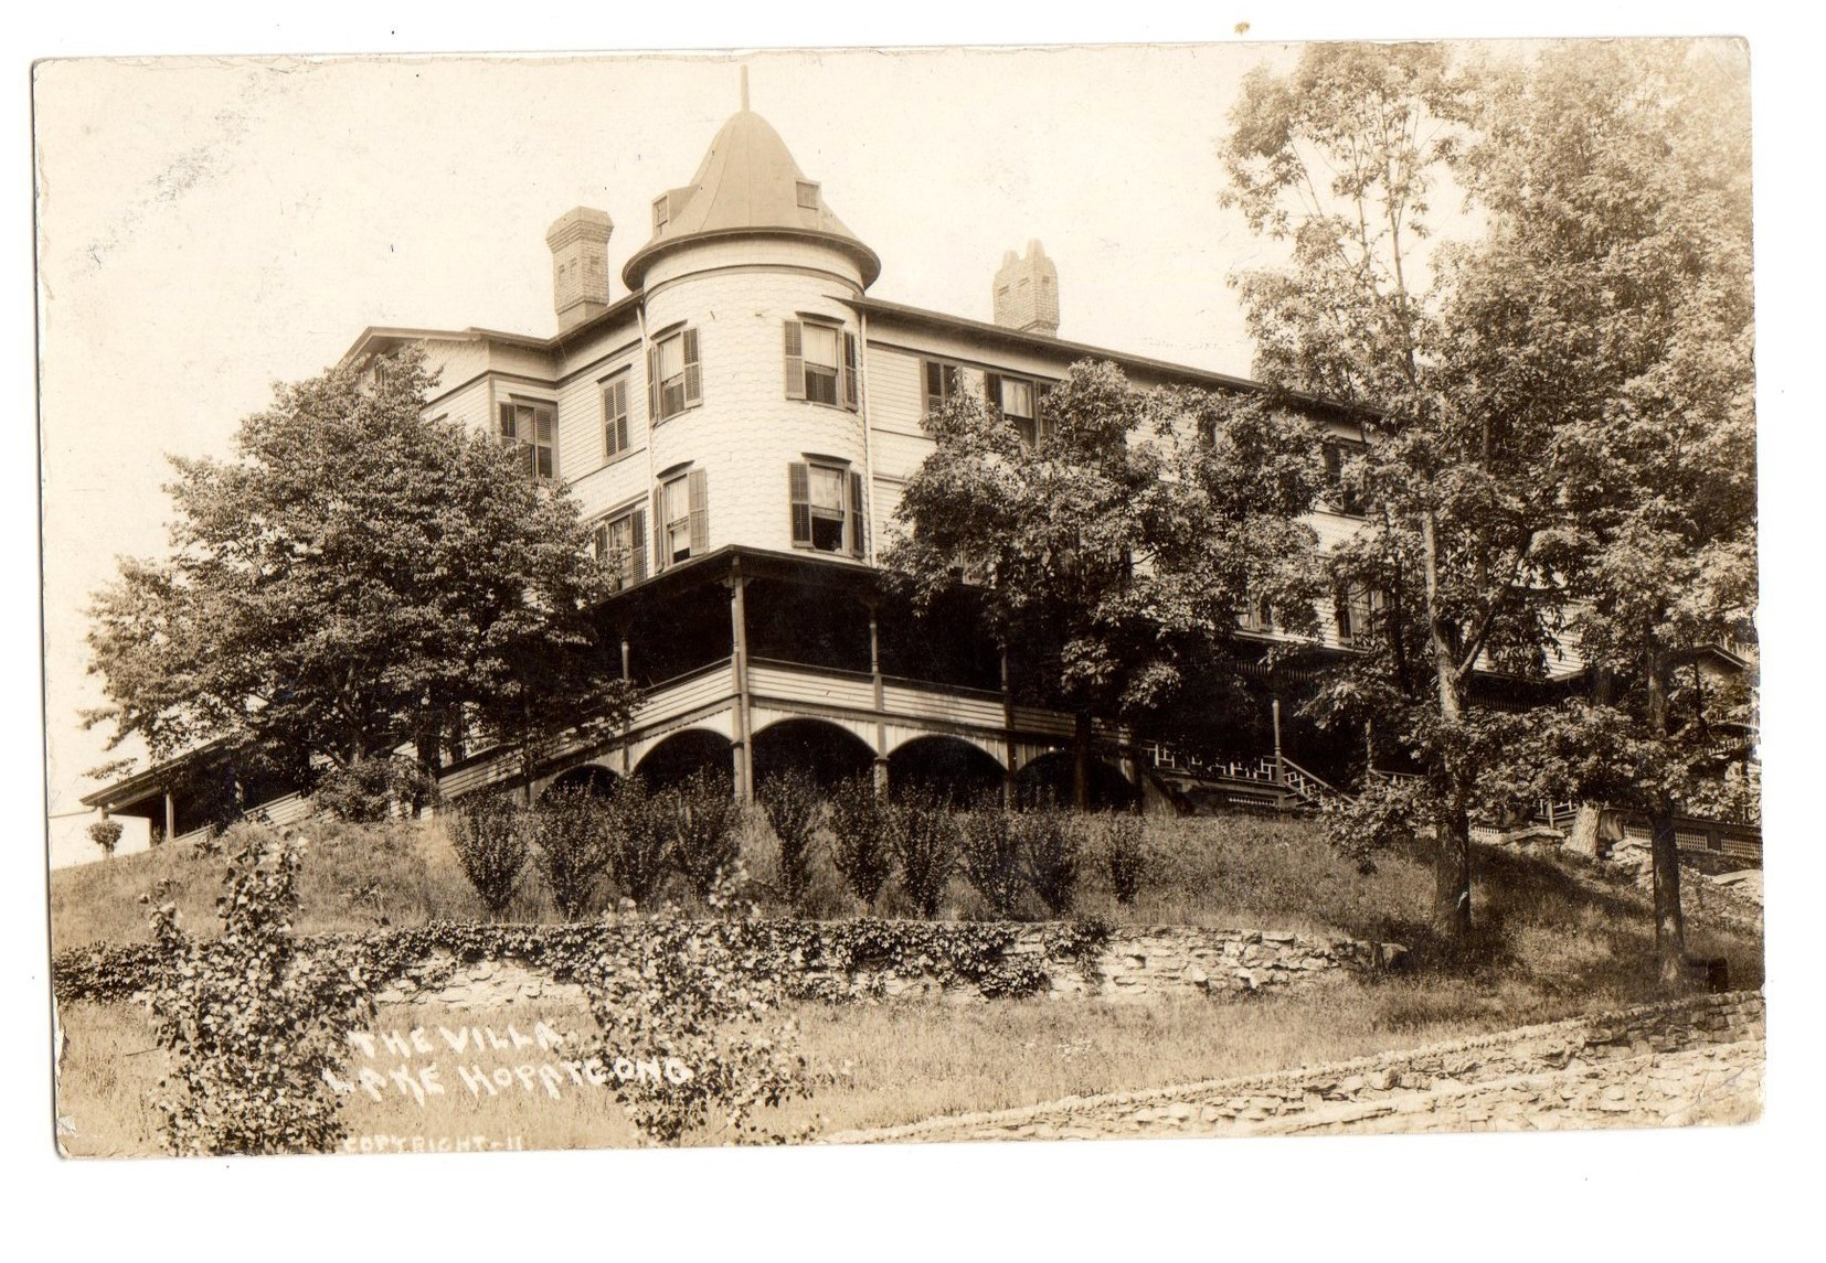 Lake Hopatcong - The villa - 1912